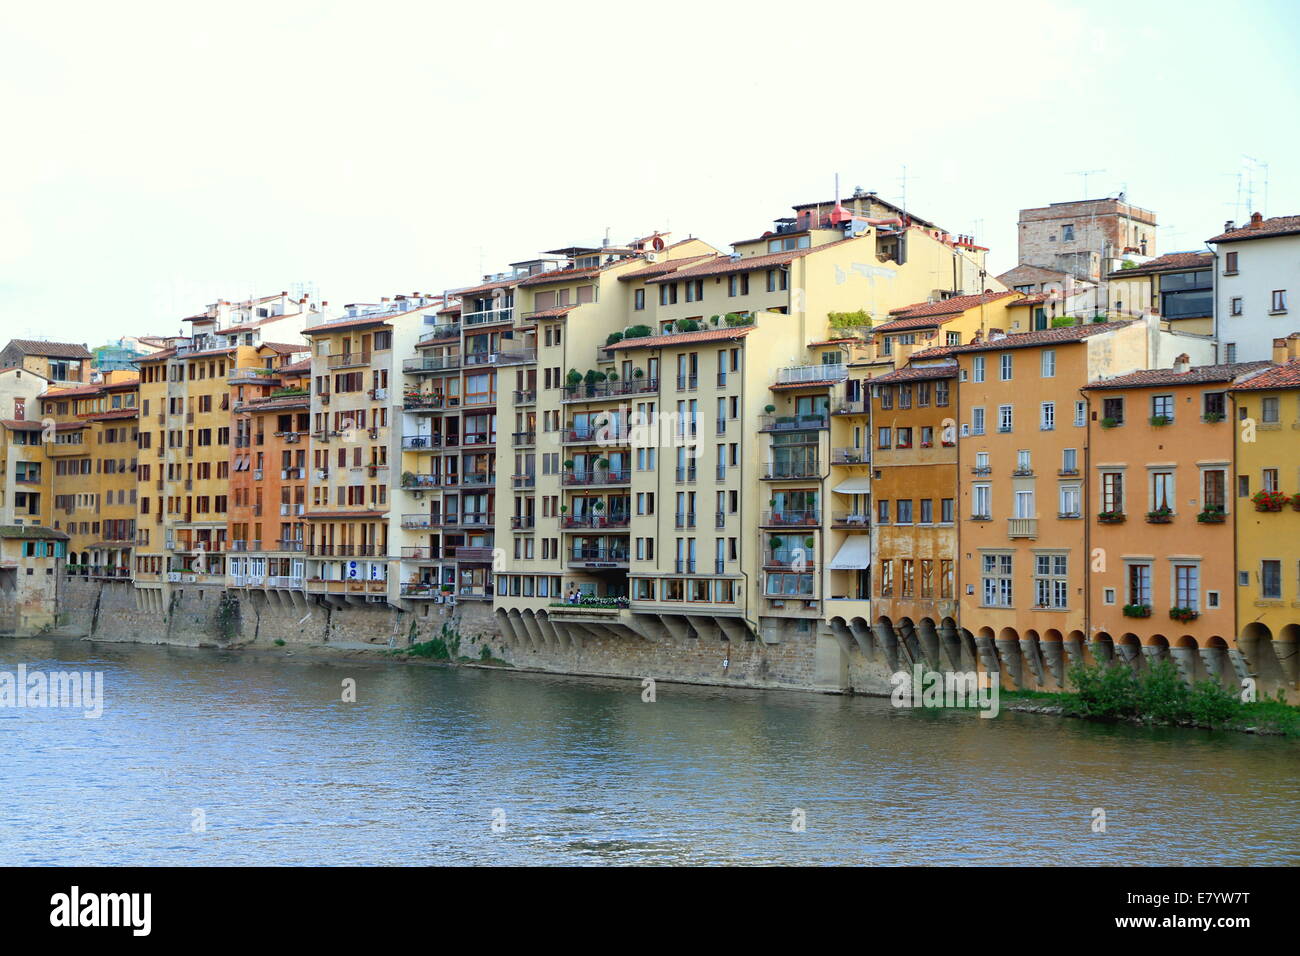 Edificios históricos a lo largo del río Arno, en Florencia, Italia. Foto de stock